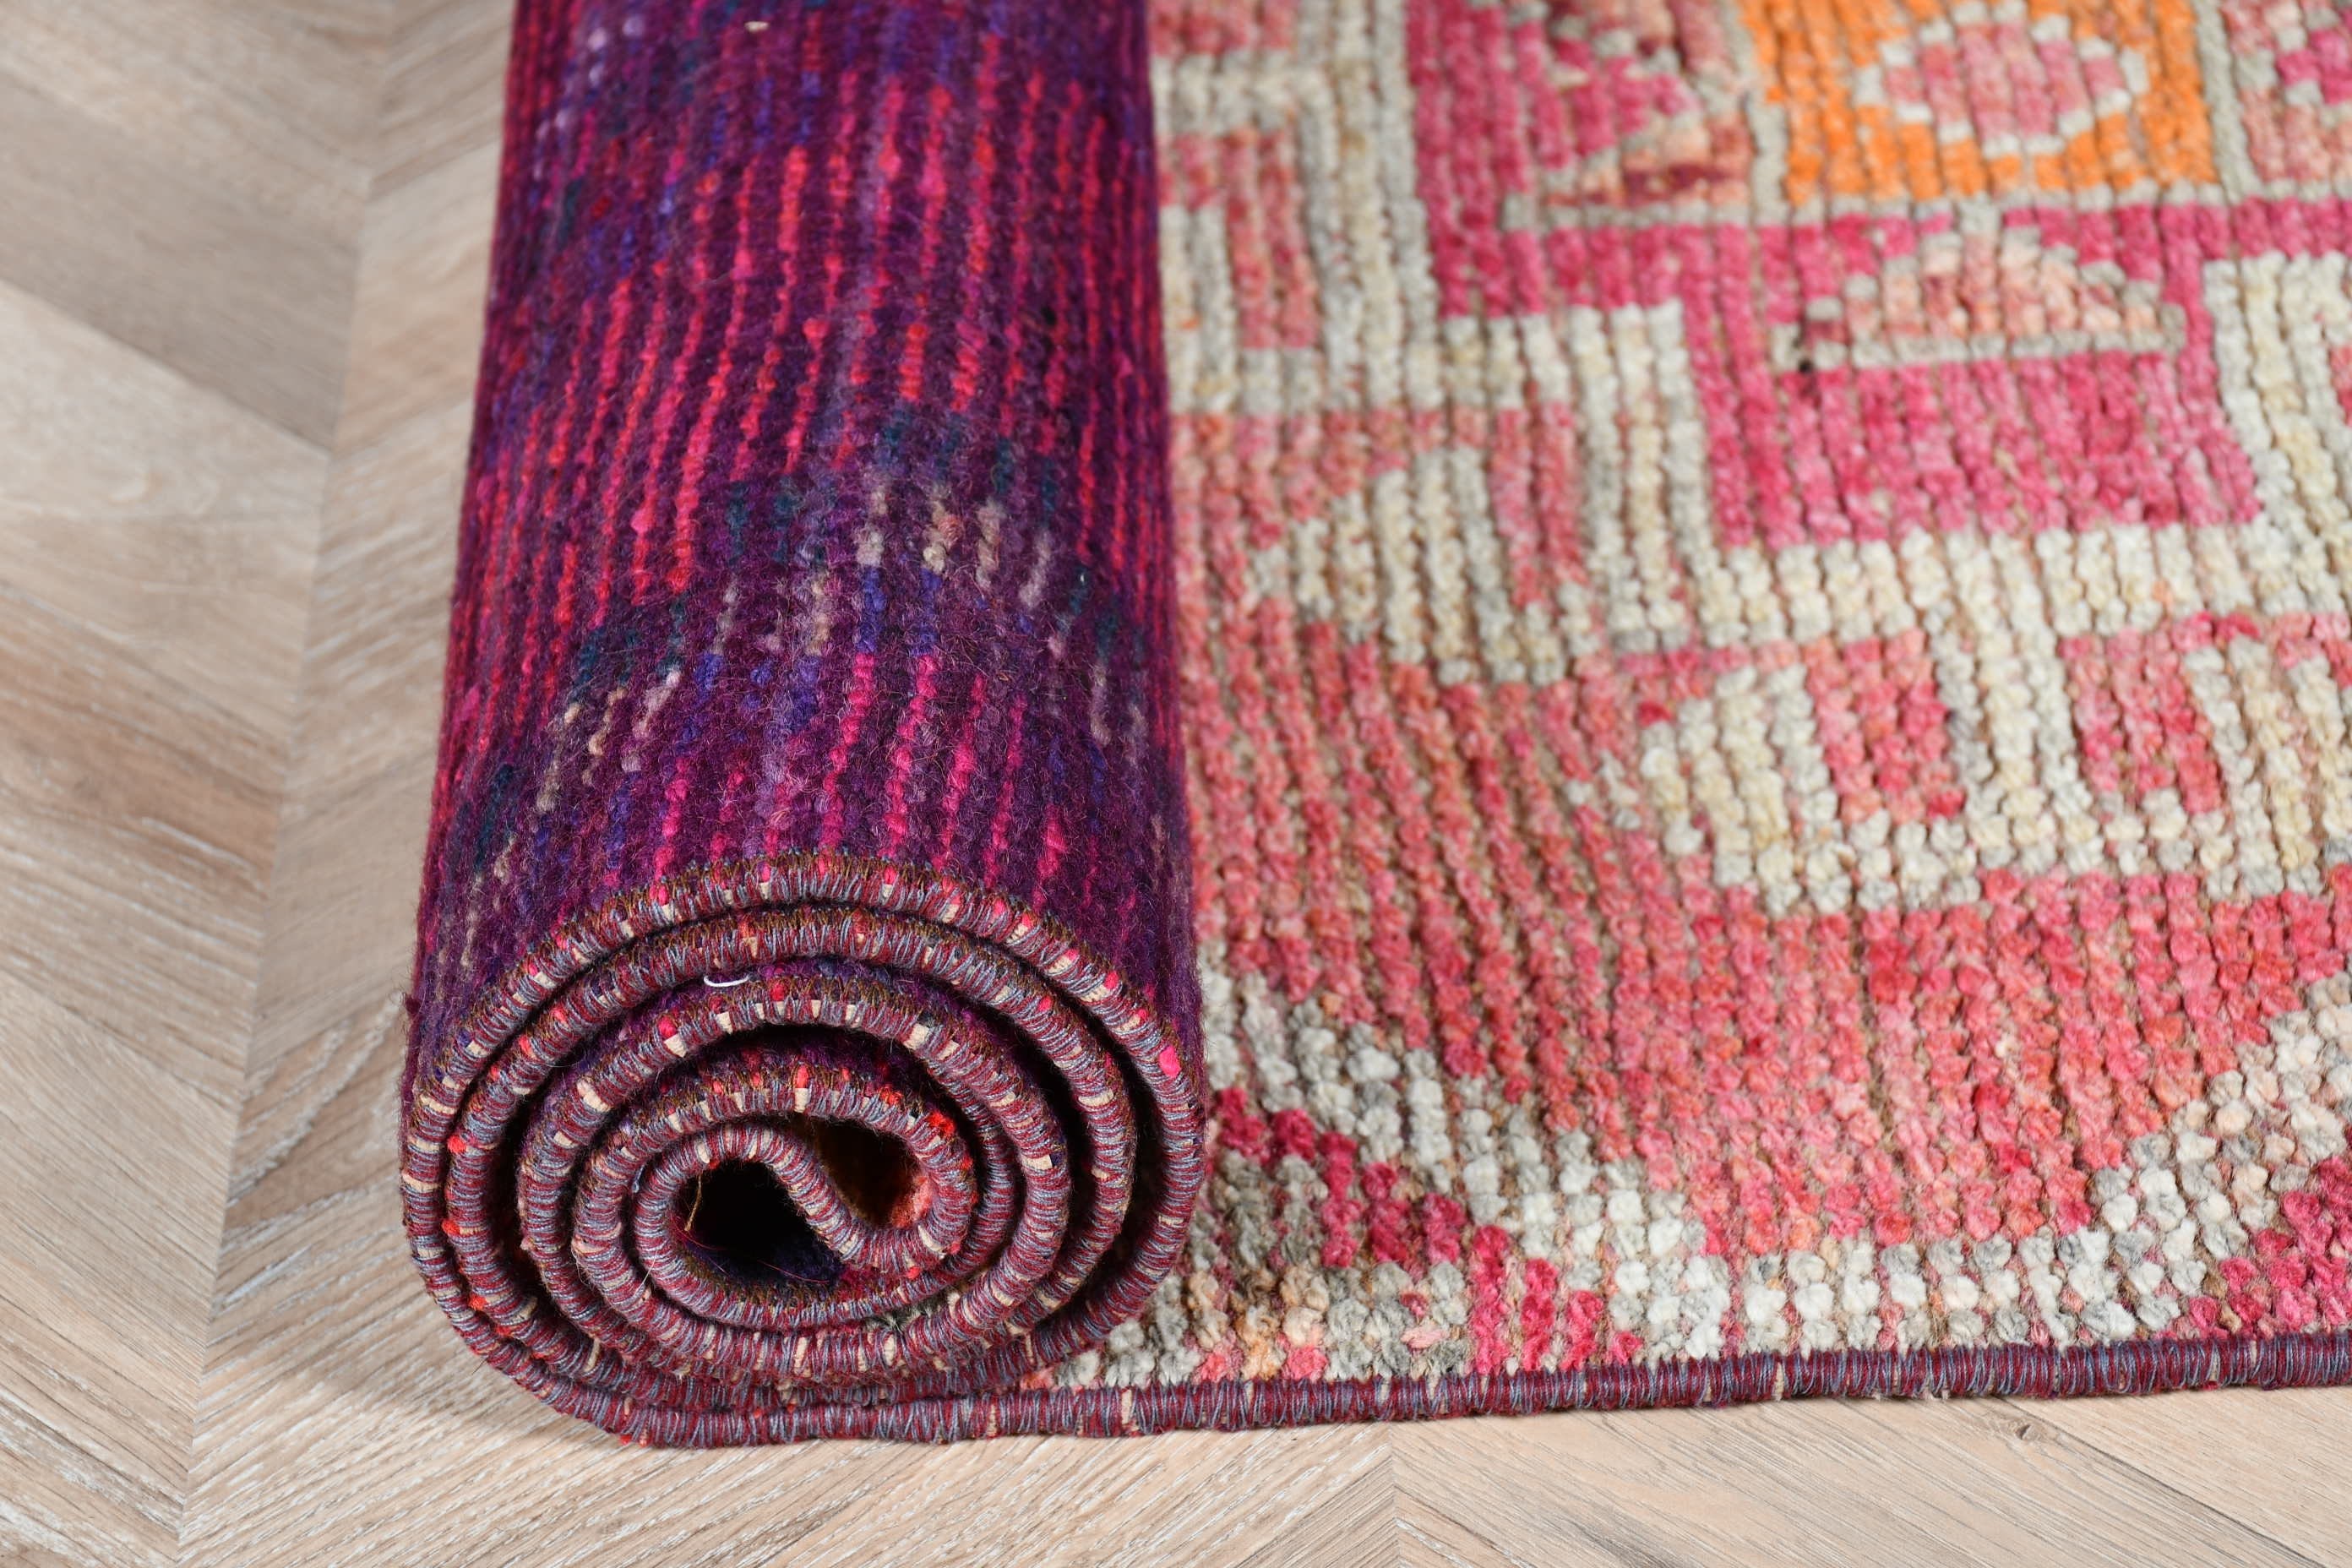 Pink Floor Rug, Kitchen Rug, Rugs for Hallway, 2.8x9.7 ft Runner Rugs, Turkish Rugs, Vintage Rugs, Outdoor Rug, Oriental Rug, Wool Rug